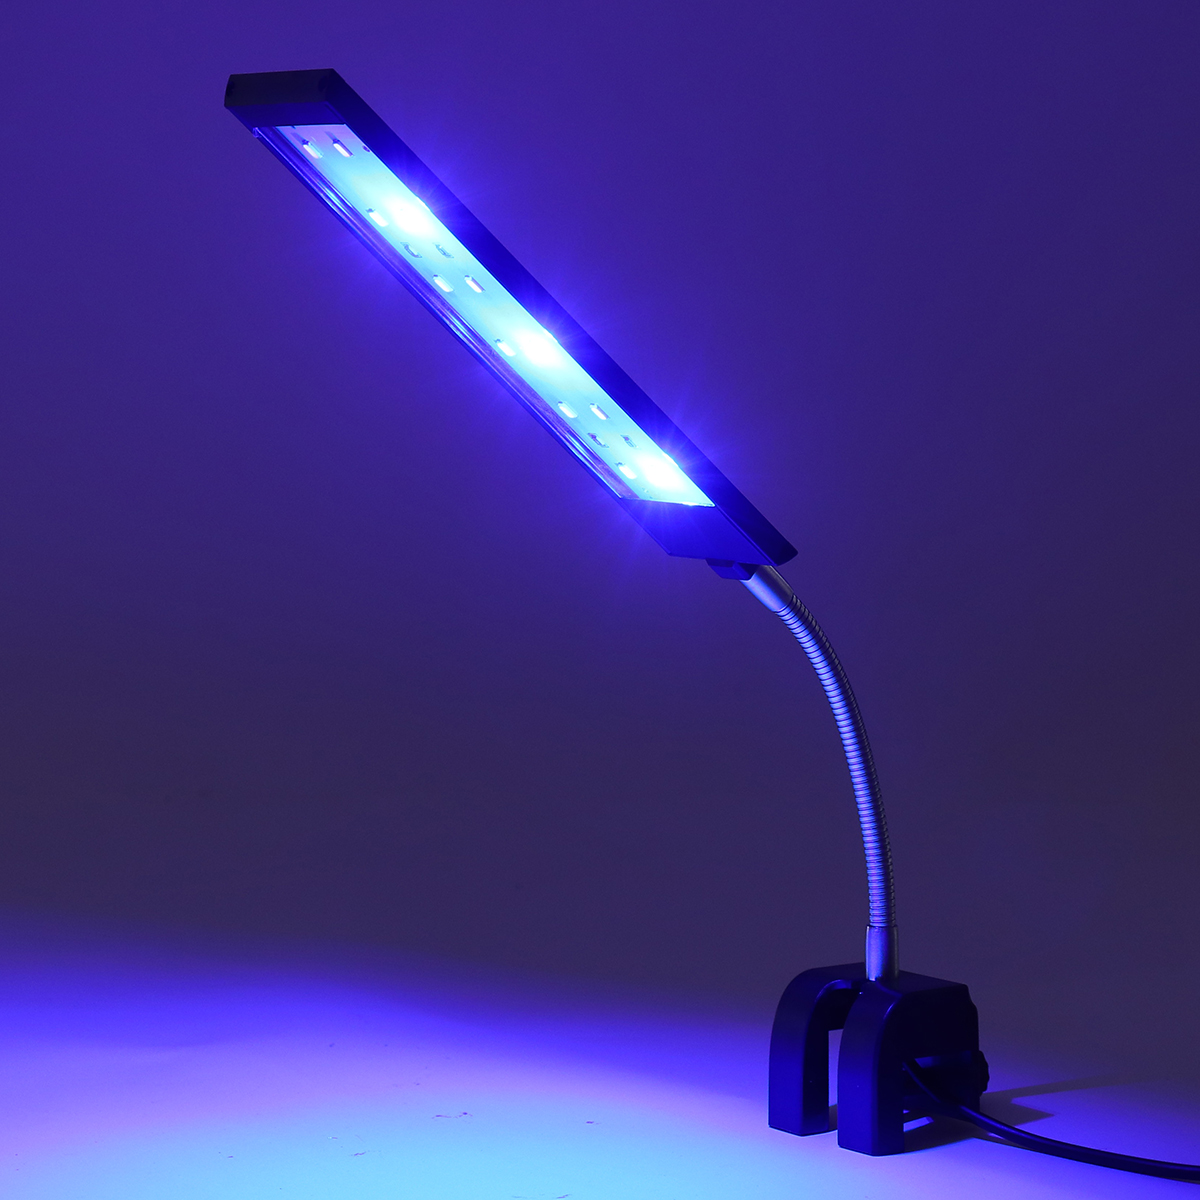 100-240V-7W-Clip-on-LED-Aquarium-Light-Fish-Tank-Decoration-Lighting-Lamp-with-White--Blue-LEDs-Touc-1640560-8